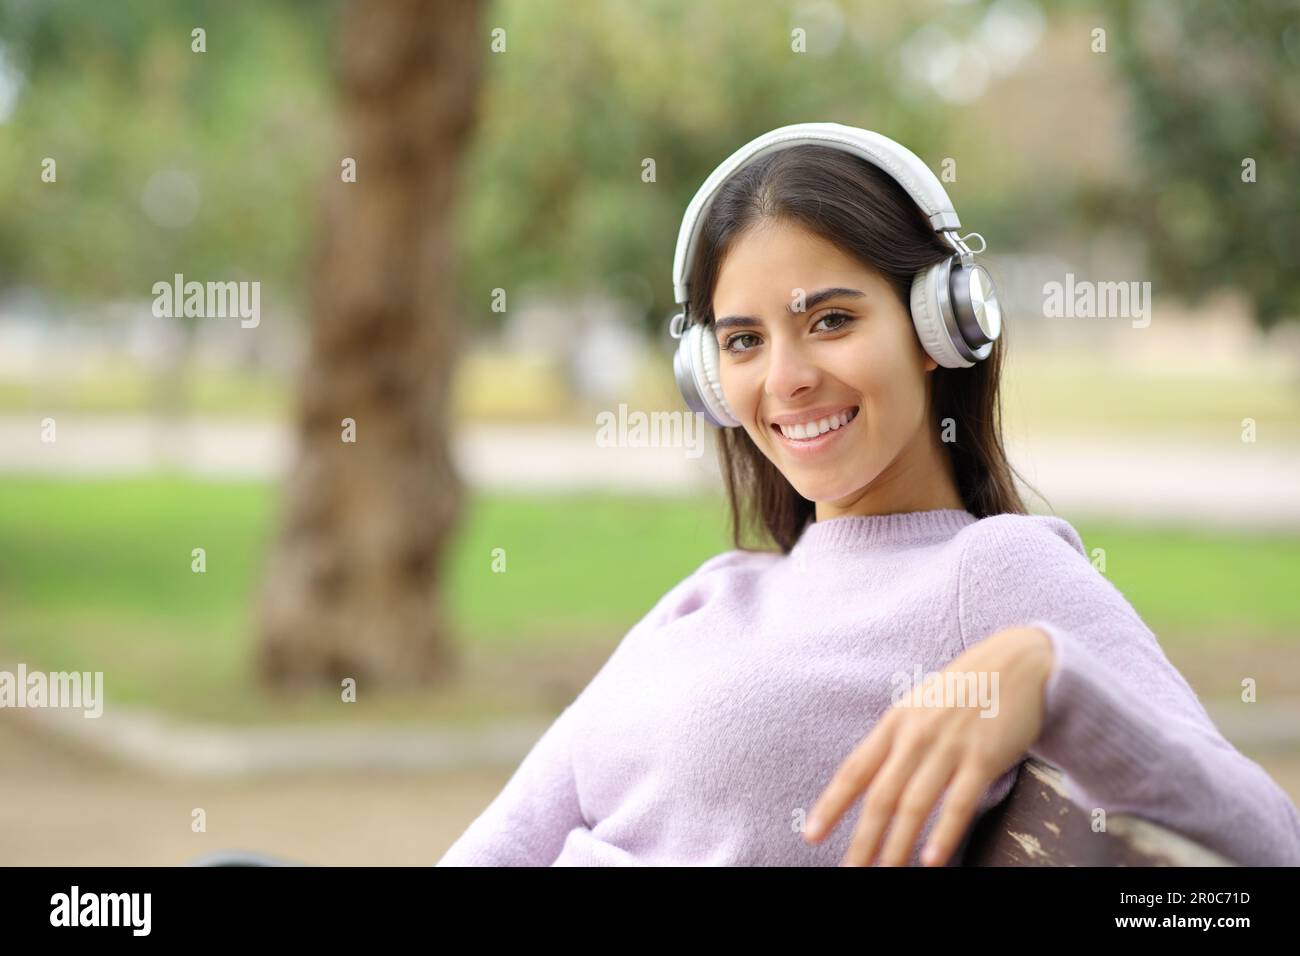 Glückliche Frau, die Musik hört und in die Kamera schaut, sitzt auf einer Bank in einem Park Stockfoto